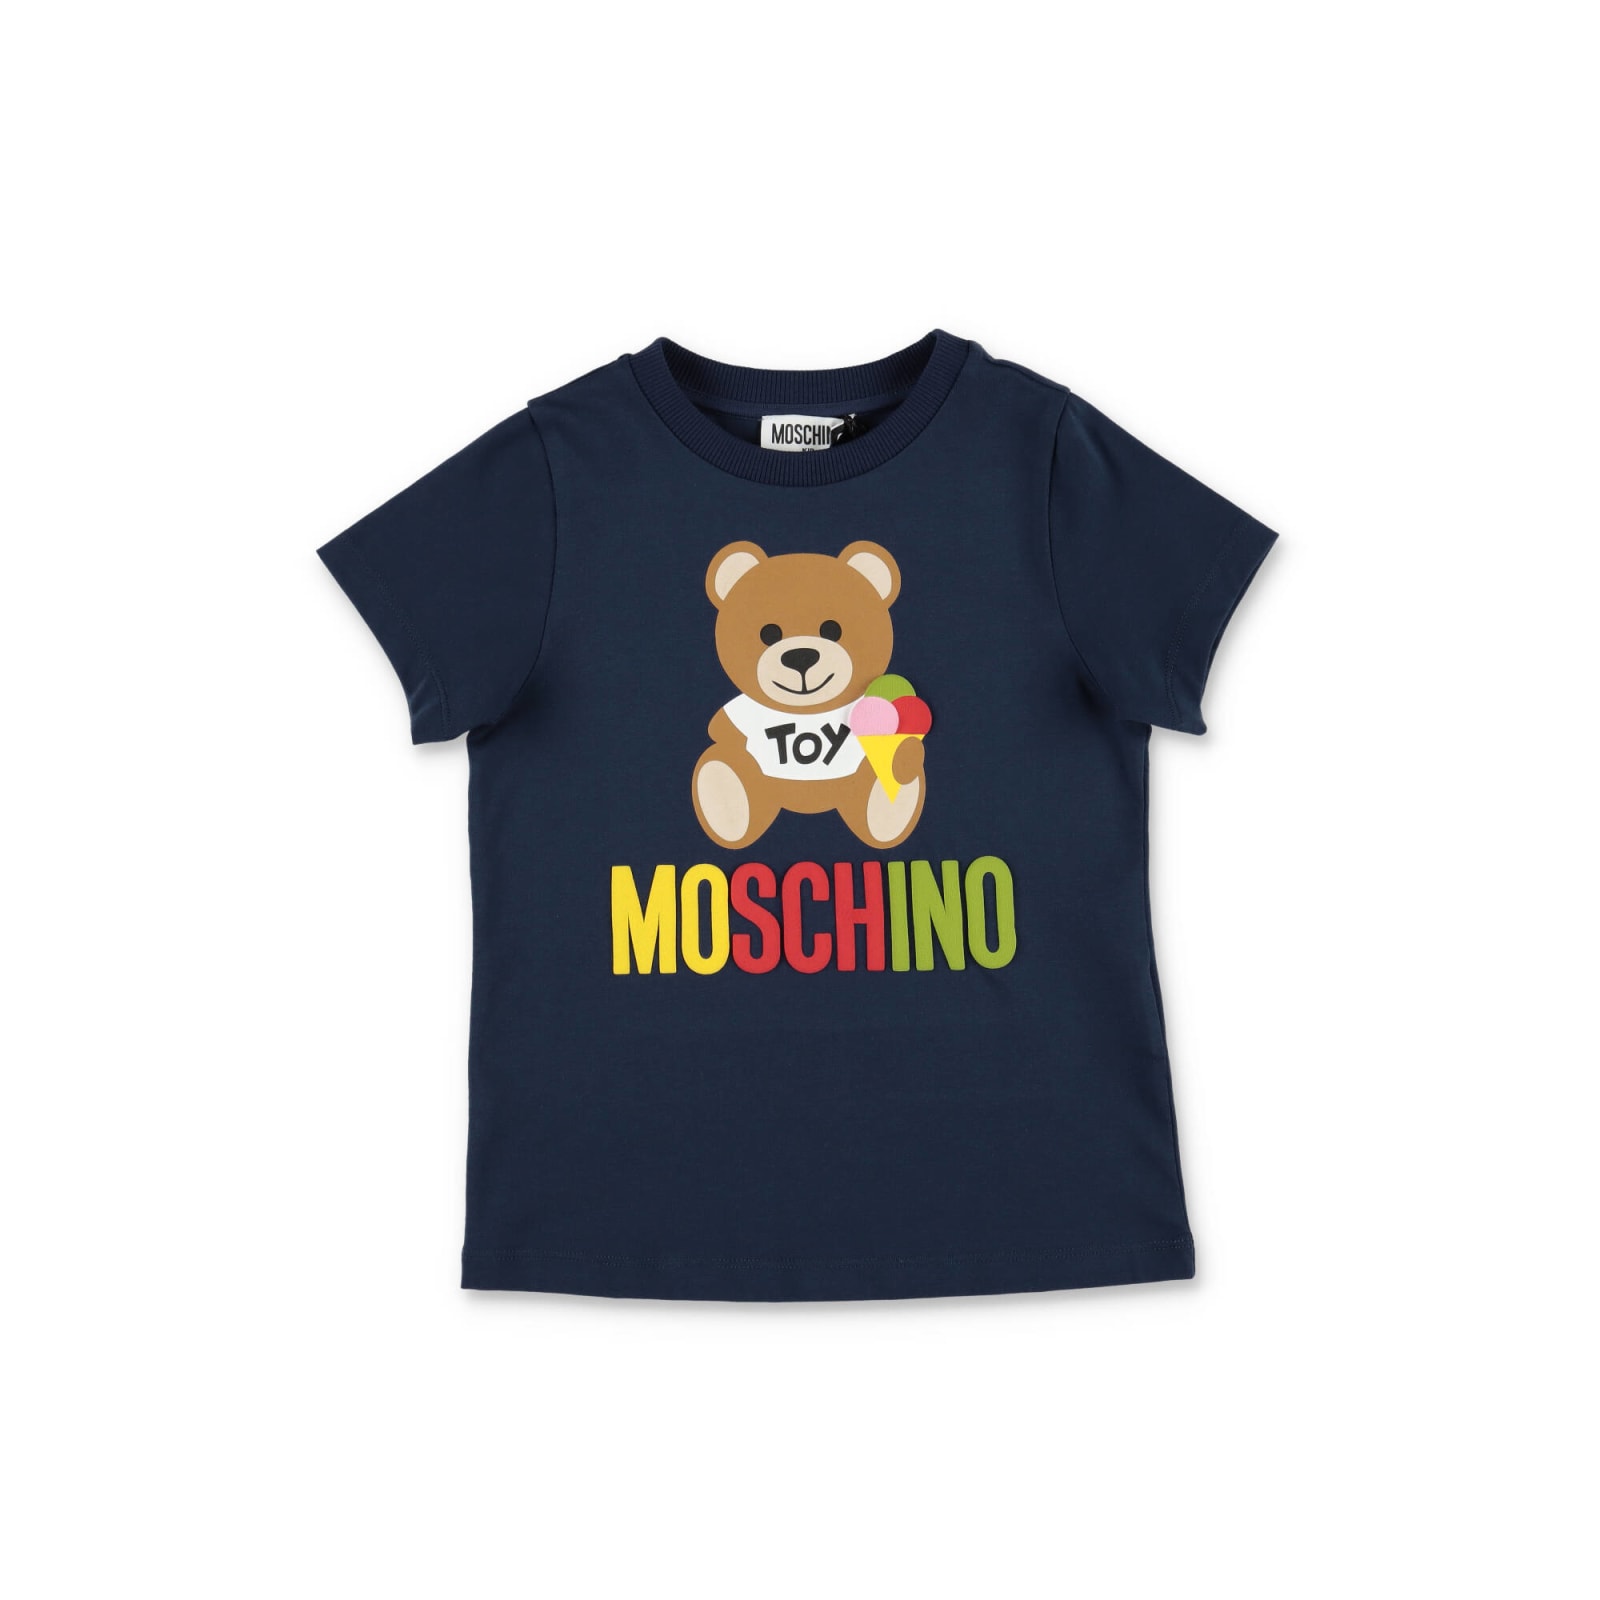 MOSCHINO MOSCHINO T-SHIRT TEDDY BEAR BLU IN JERSEY DI COTONE BAMBINO